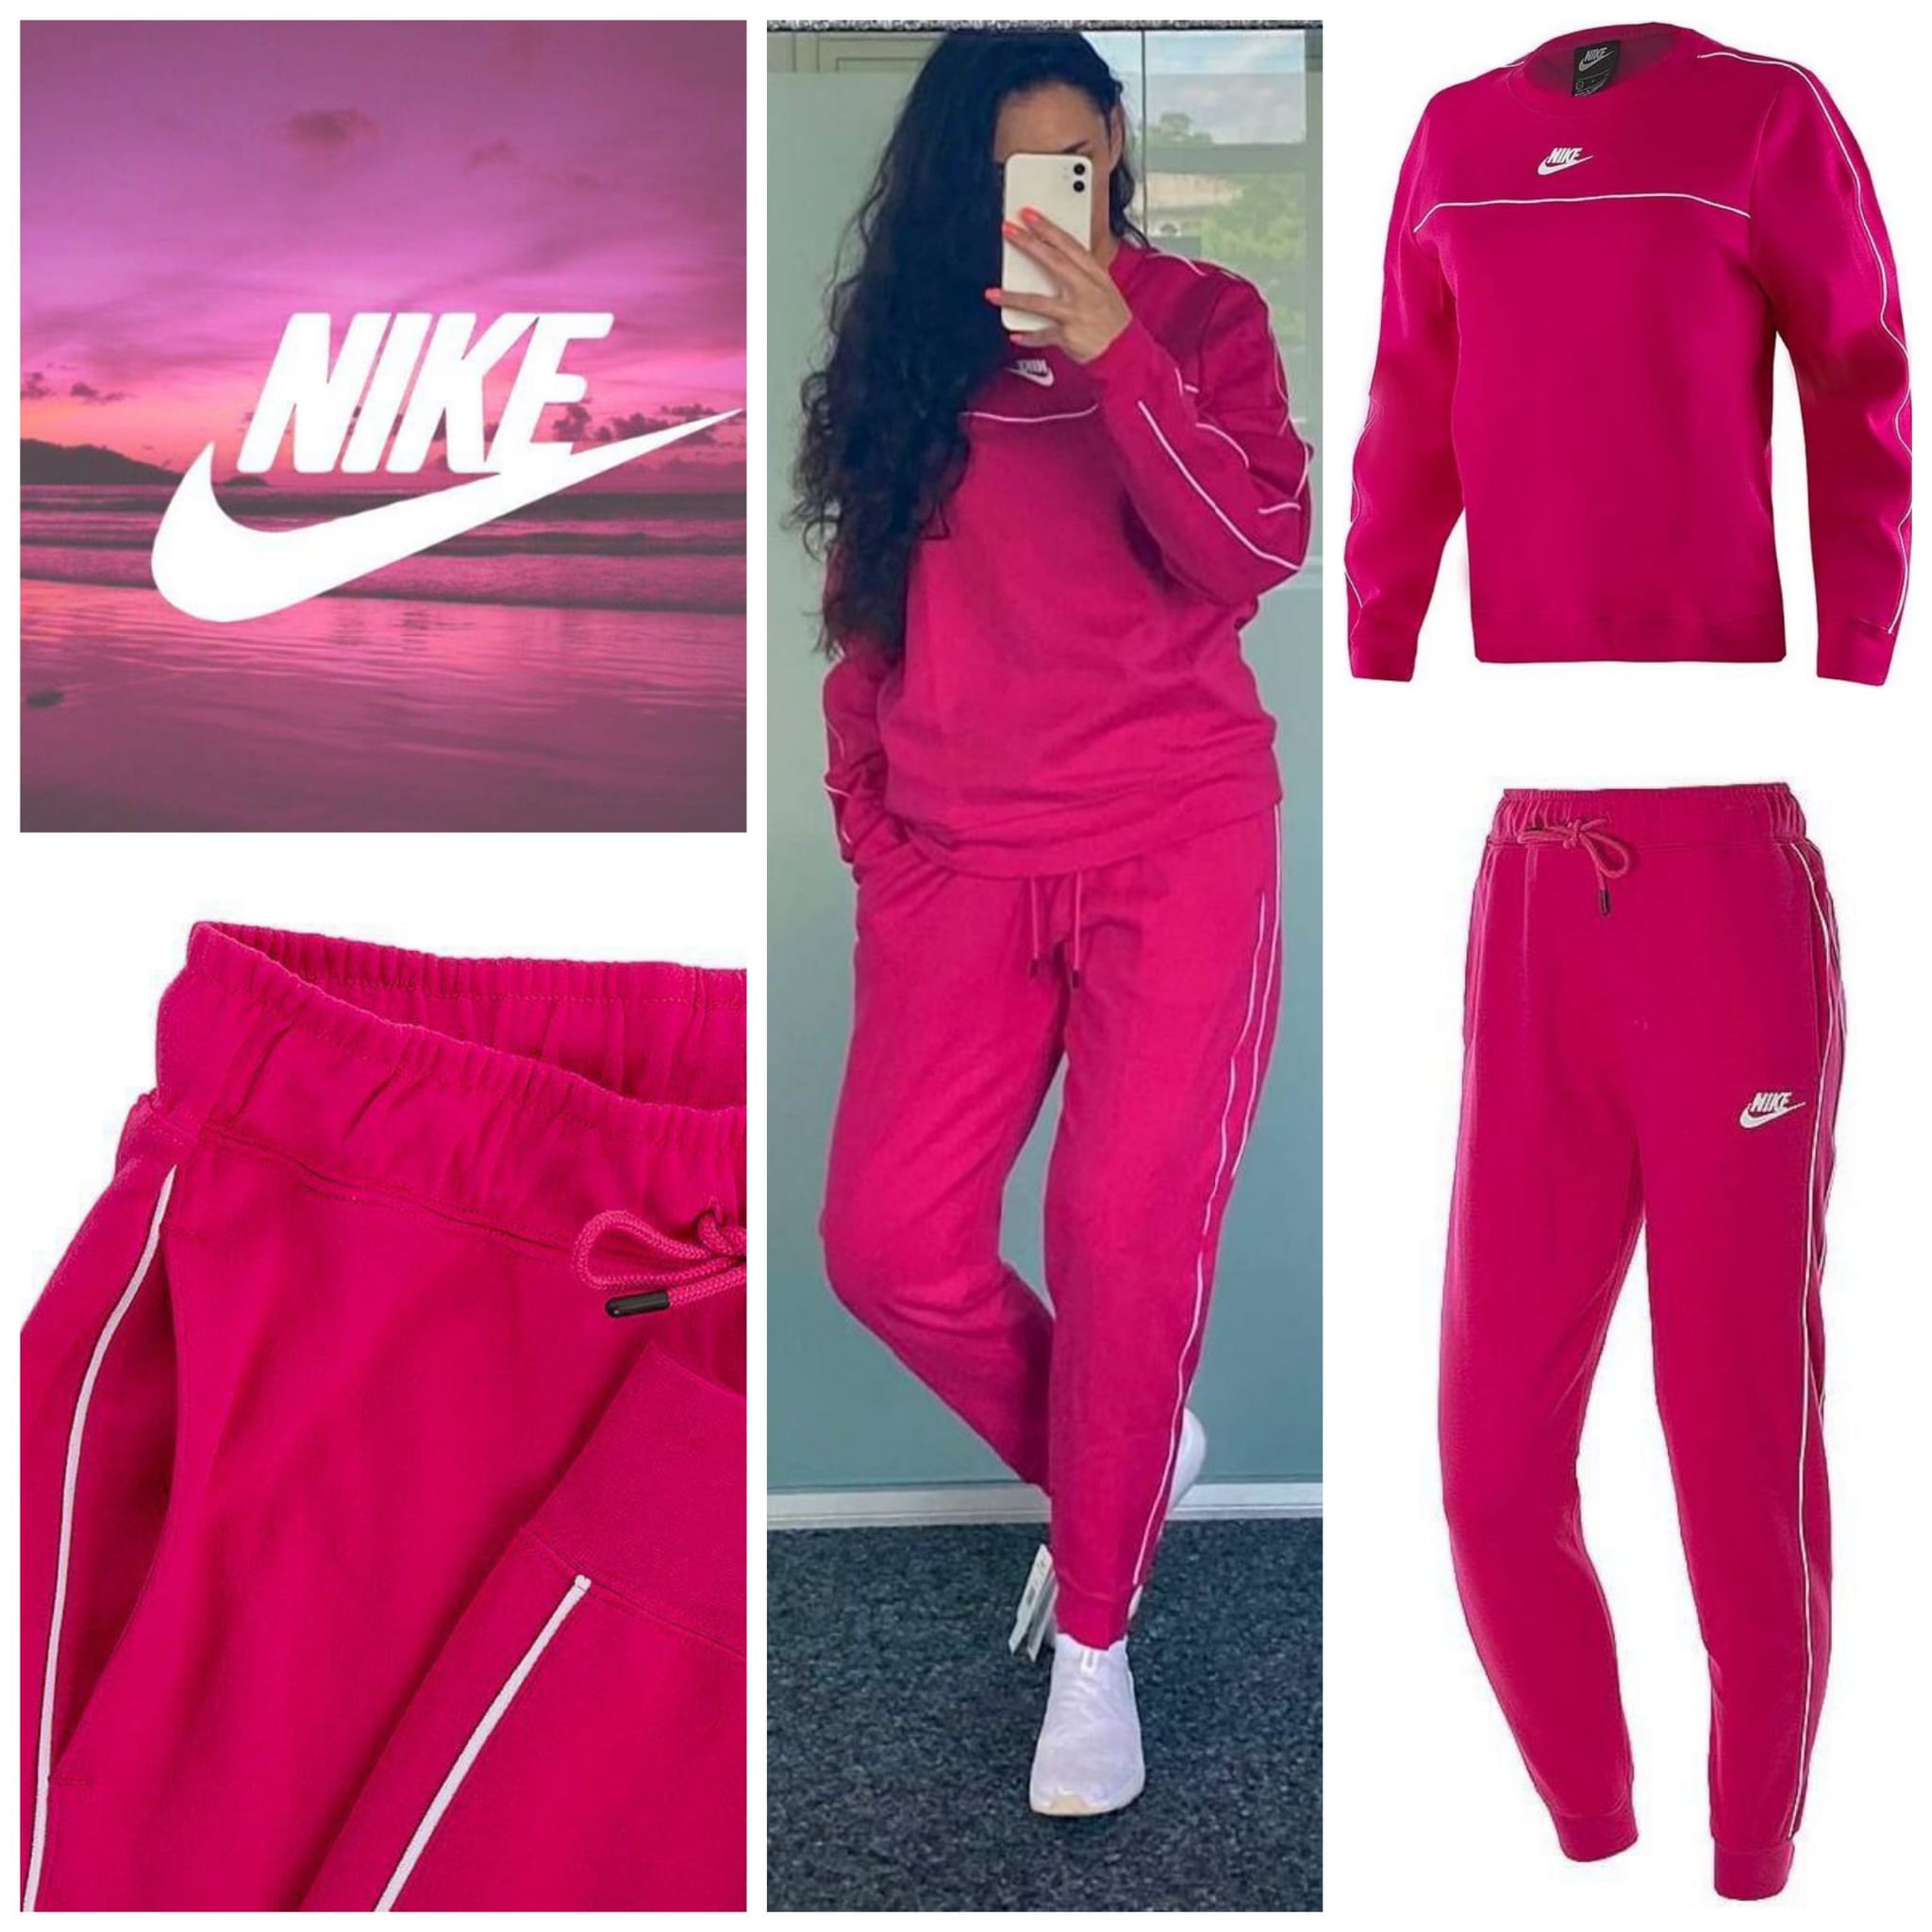 Nike women's sportswear